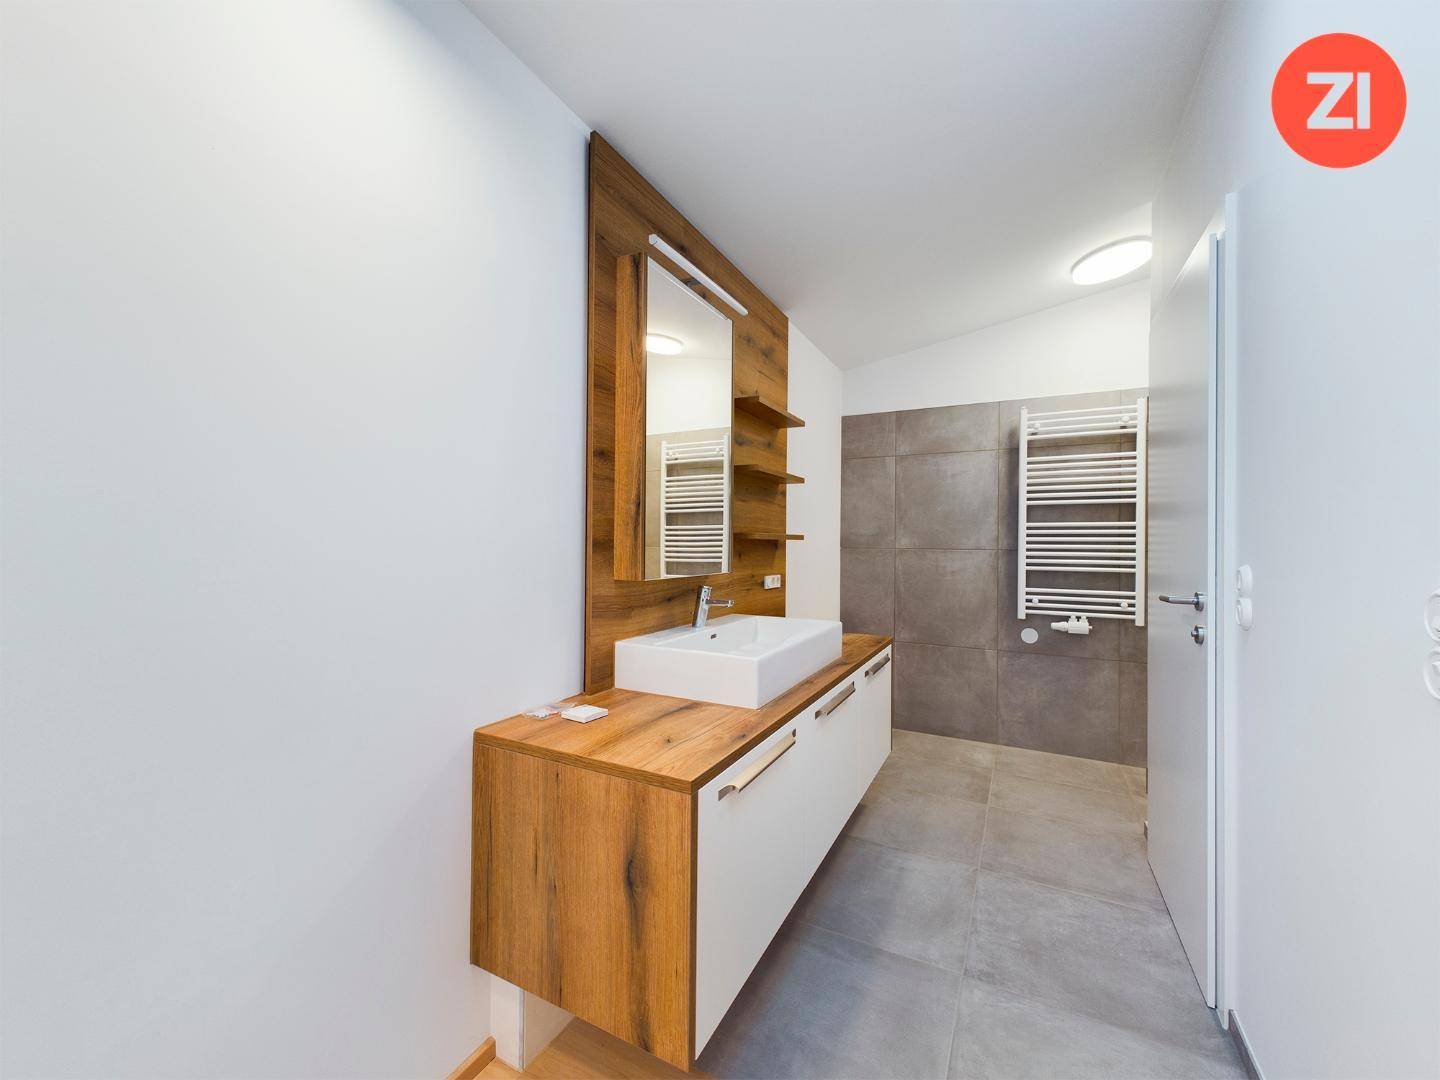 Schlafzimmer mit Badezimmer (2 Ebene)